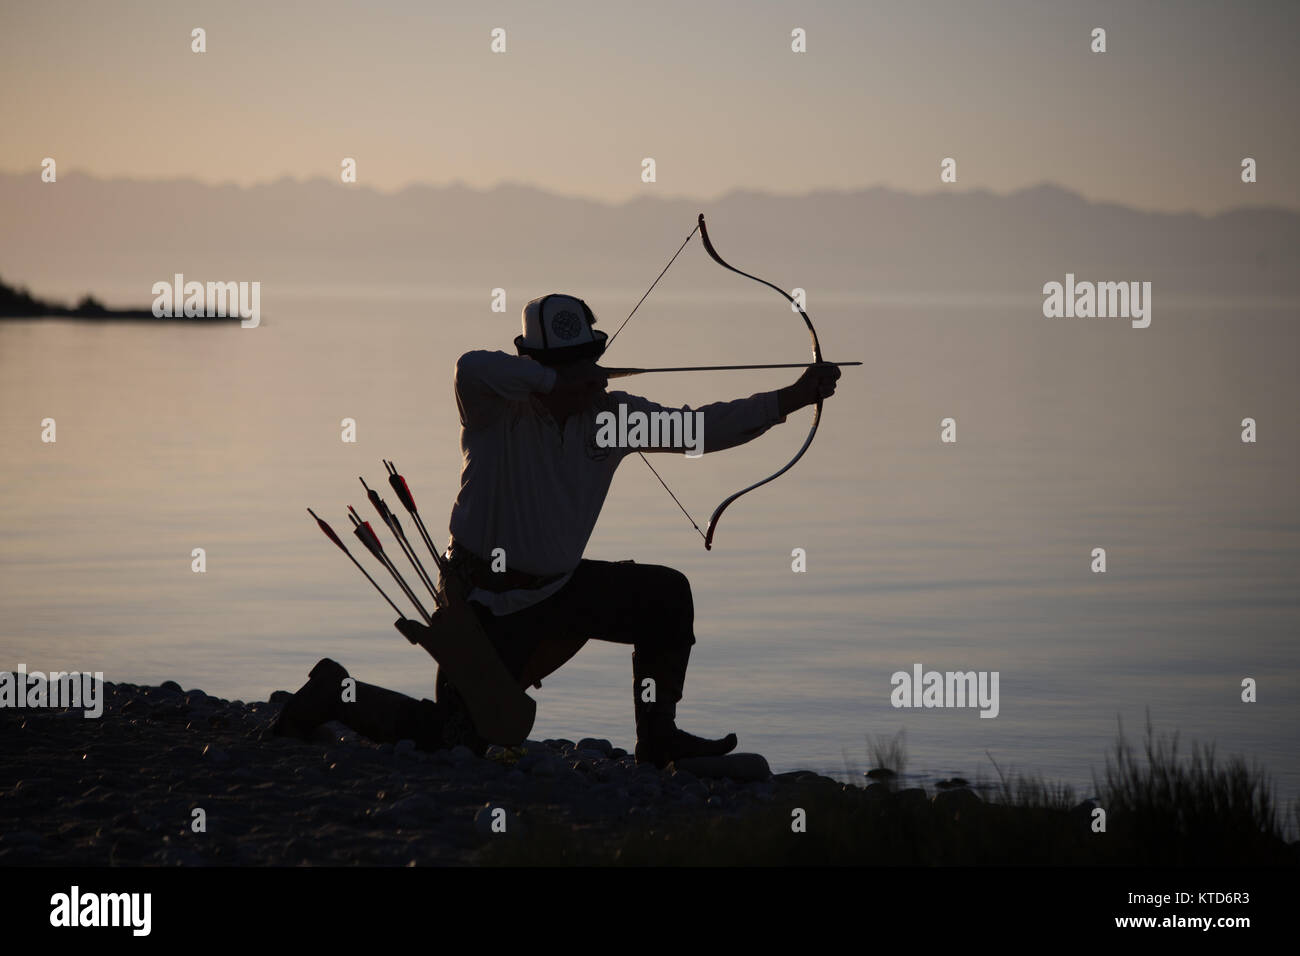 La Almaz Akynov, testa del Kirghizistan Salburuun Federazione tradizionale gruppo di caccia, pone per le foto sulla riva del lago Issyk-Kol. Foto Stock